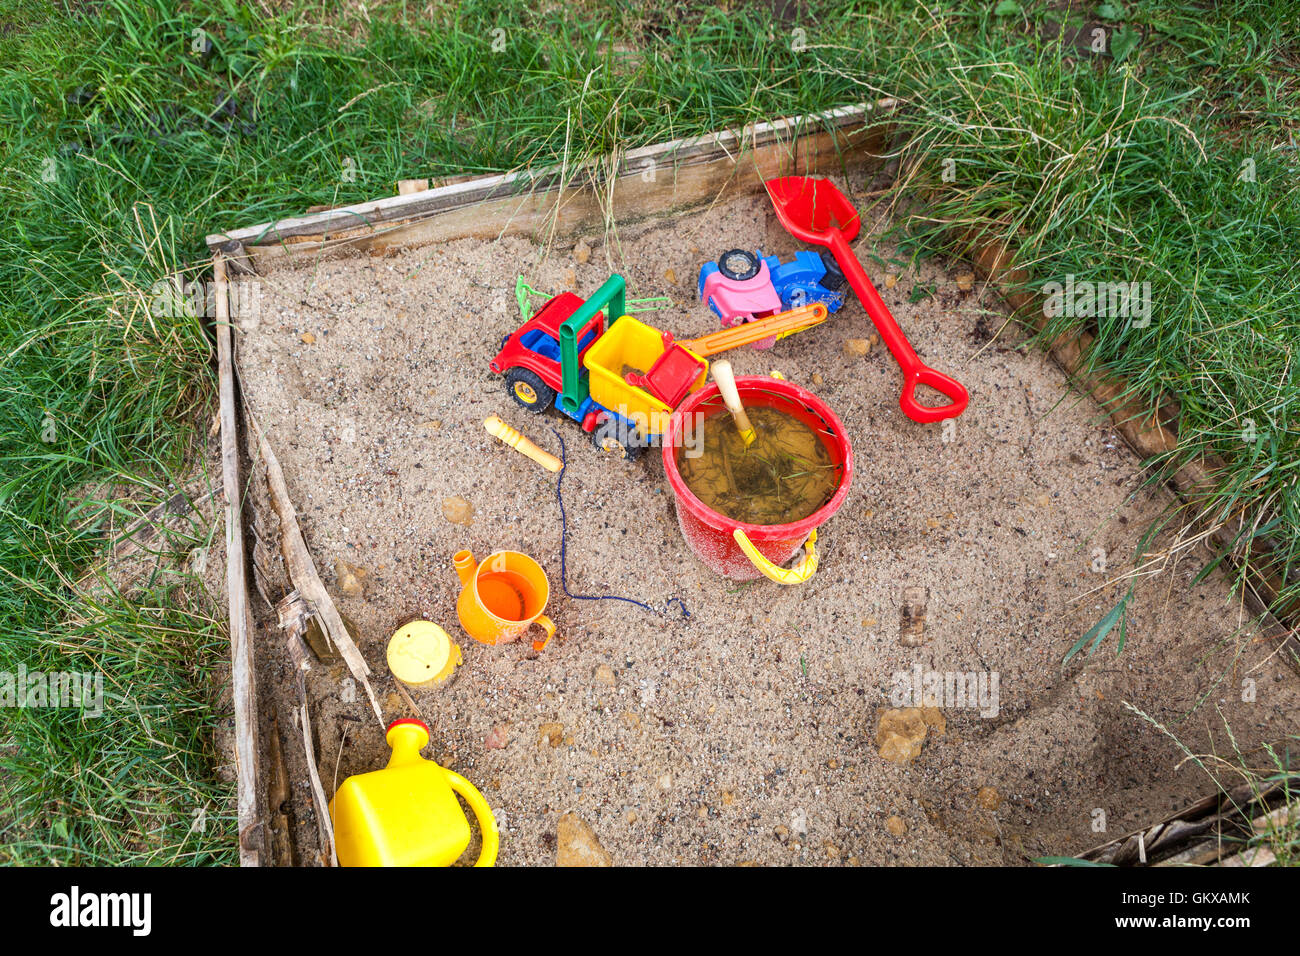 Kinderspielplatz Spielzeug in einem Sandkasten Stockfoto